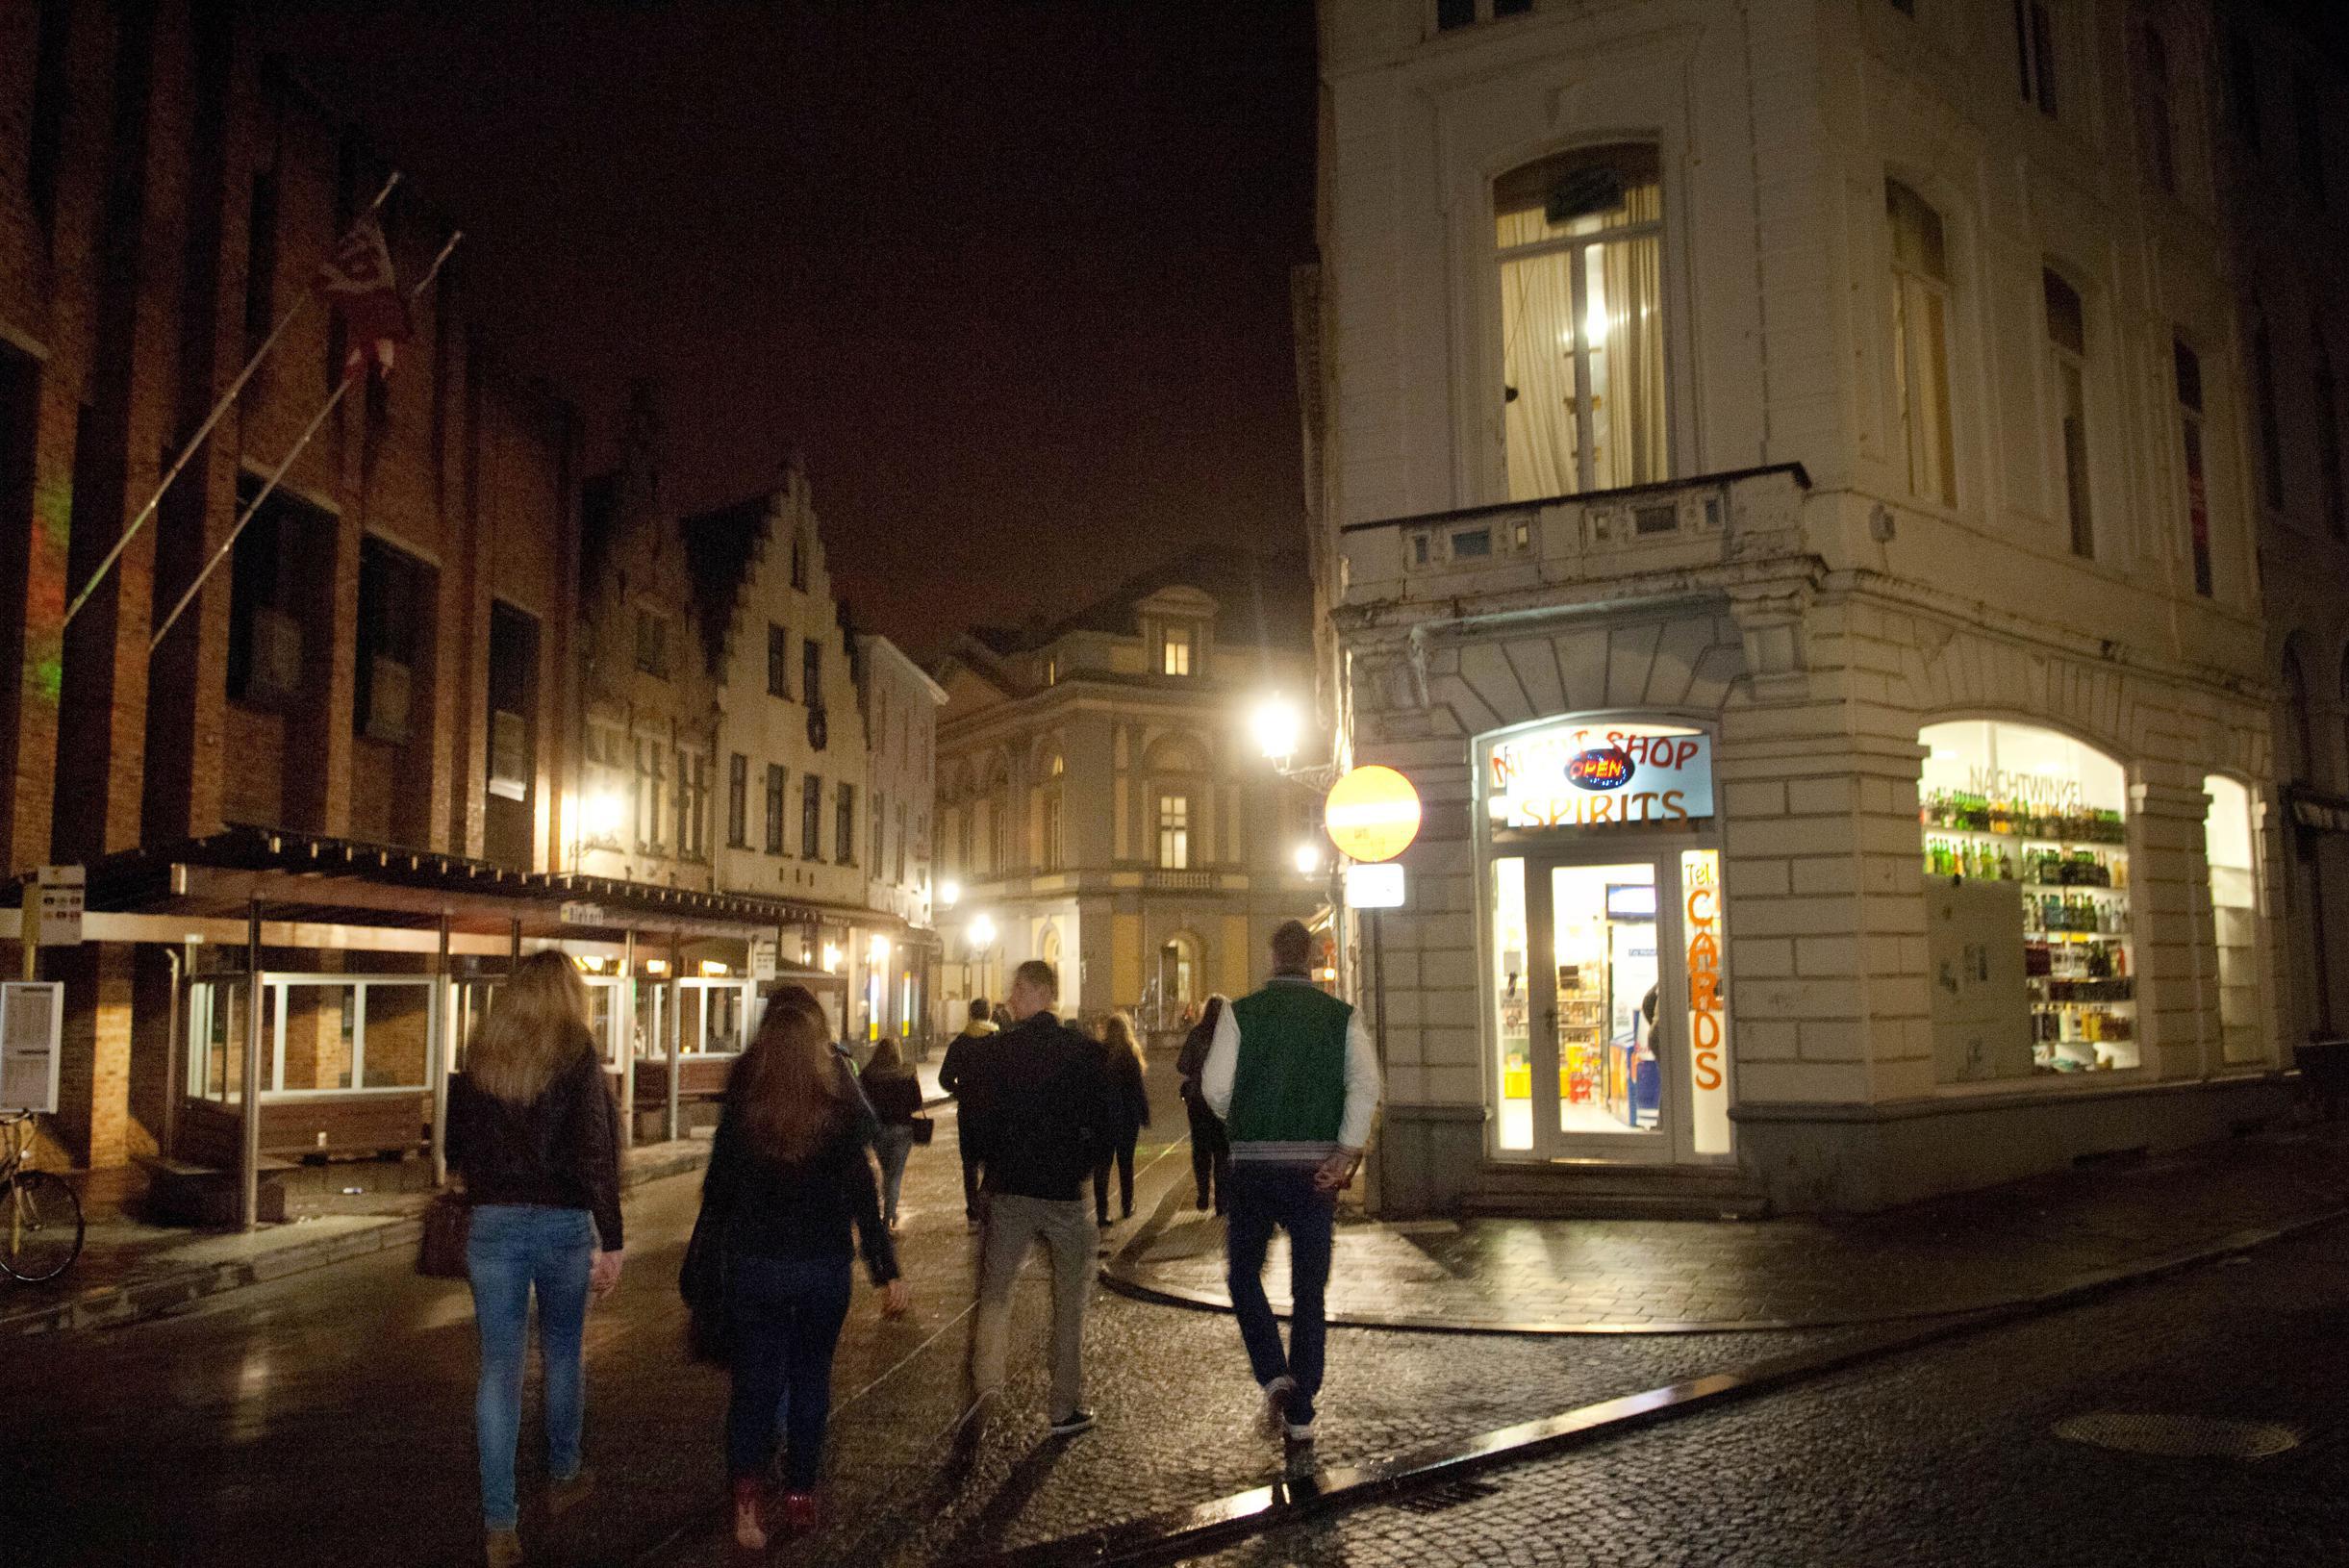 “Relschoppers hebben het gemunt op onze agenten”: Brugge is gebrek aan respect beu en neemt maatregelen in uitgaansbuurt